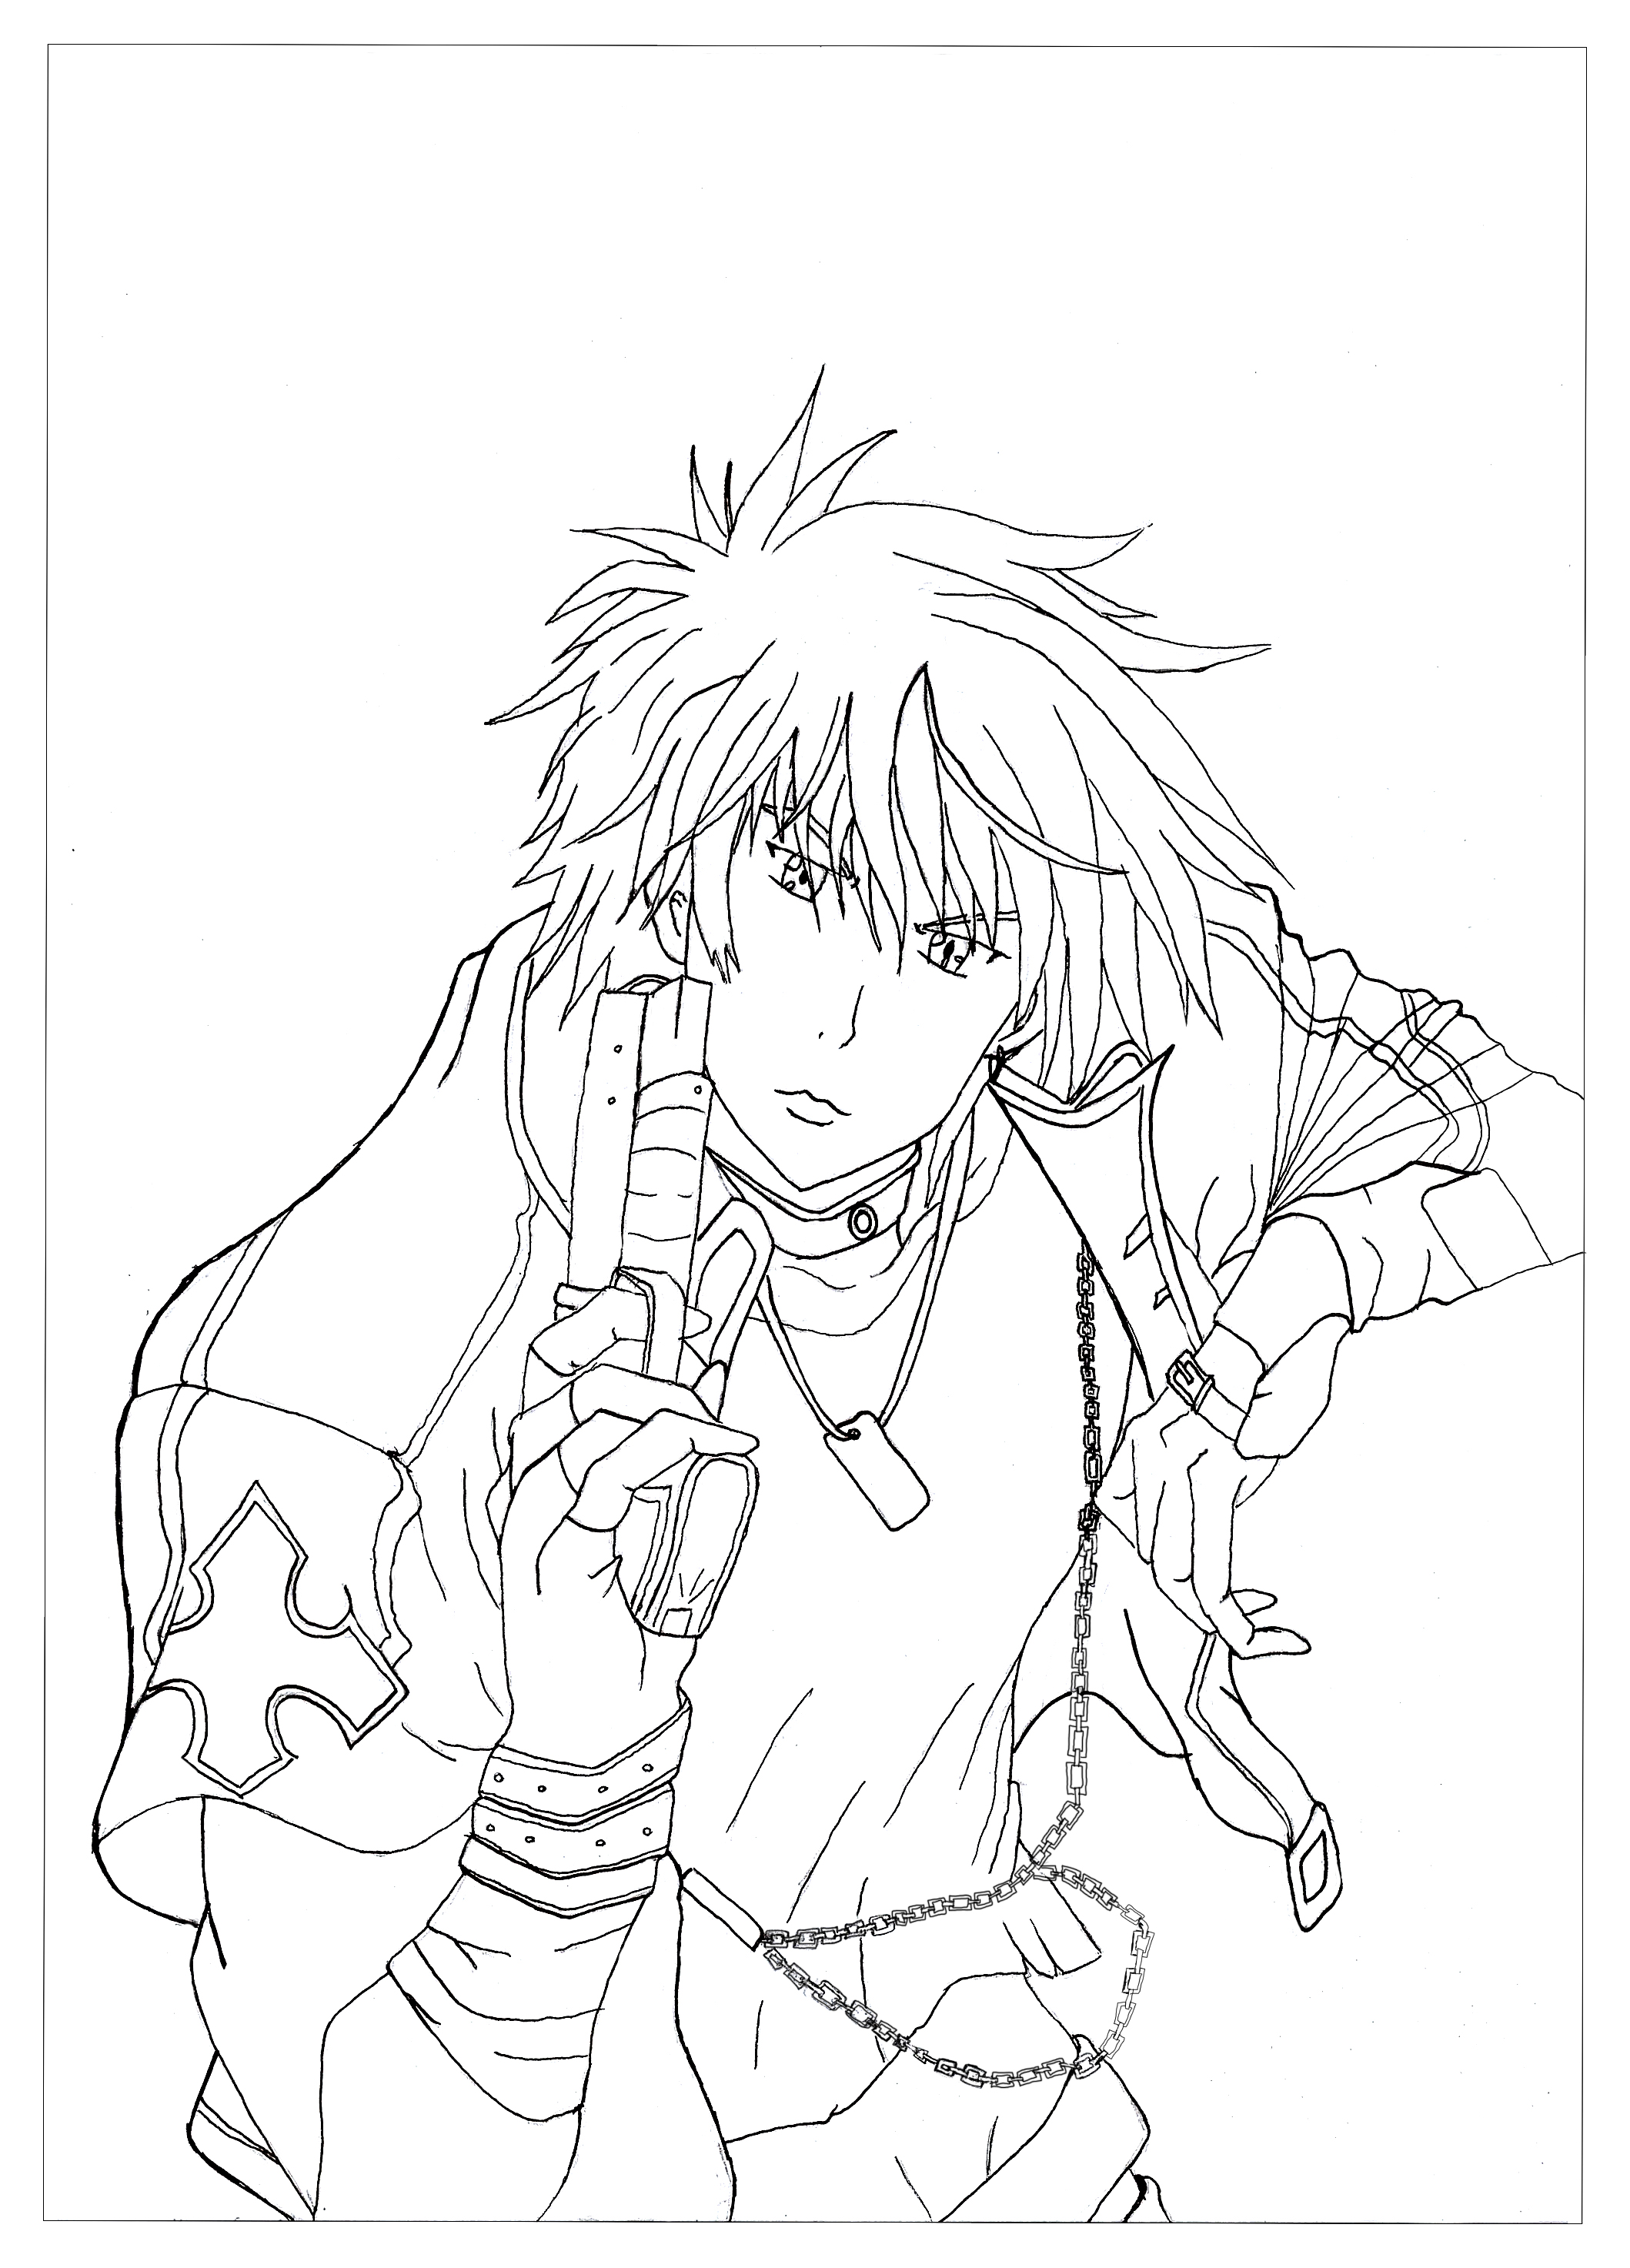 Voici un coloriage de Rayne. C'est un personnage du manga Neo Angelique Abyss. Il a pour rôle de purifier les mauvais esprits avec son arme, Artiste : Krissy